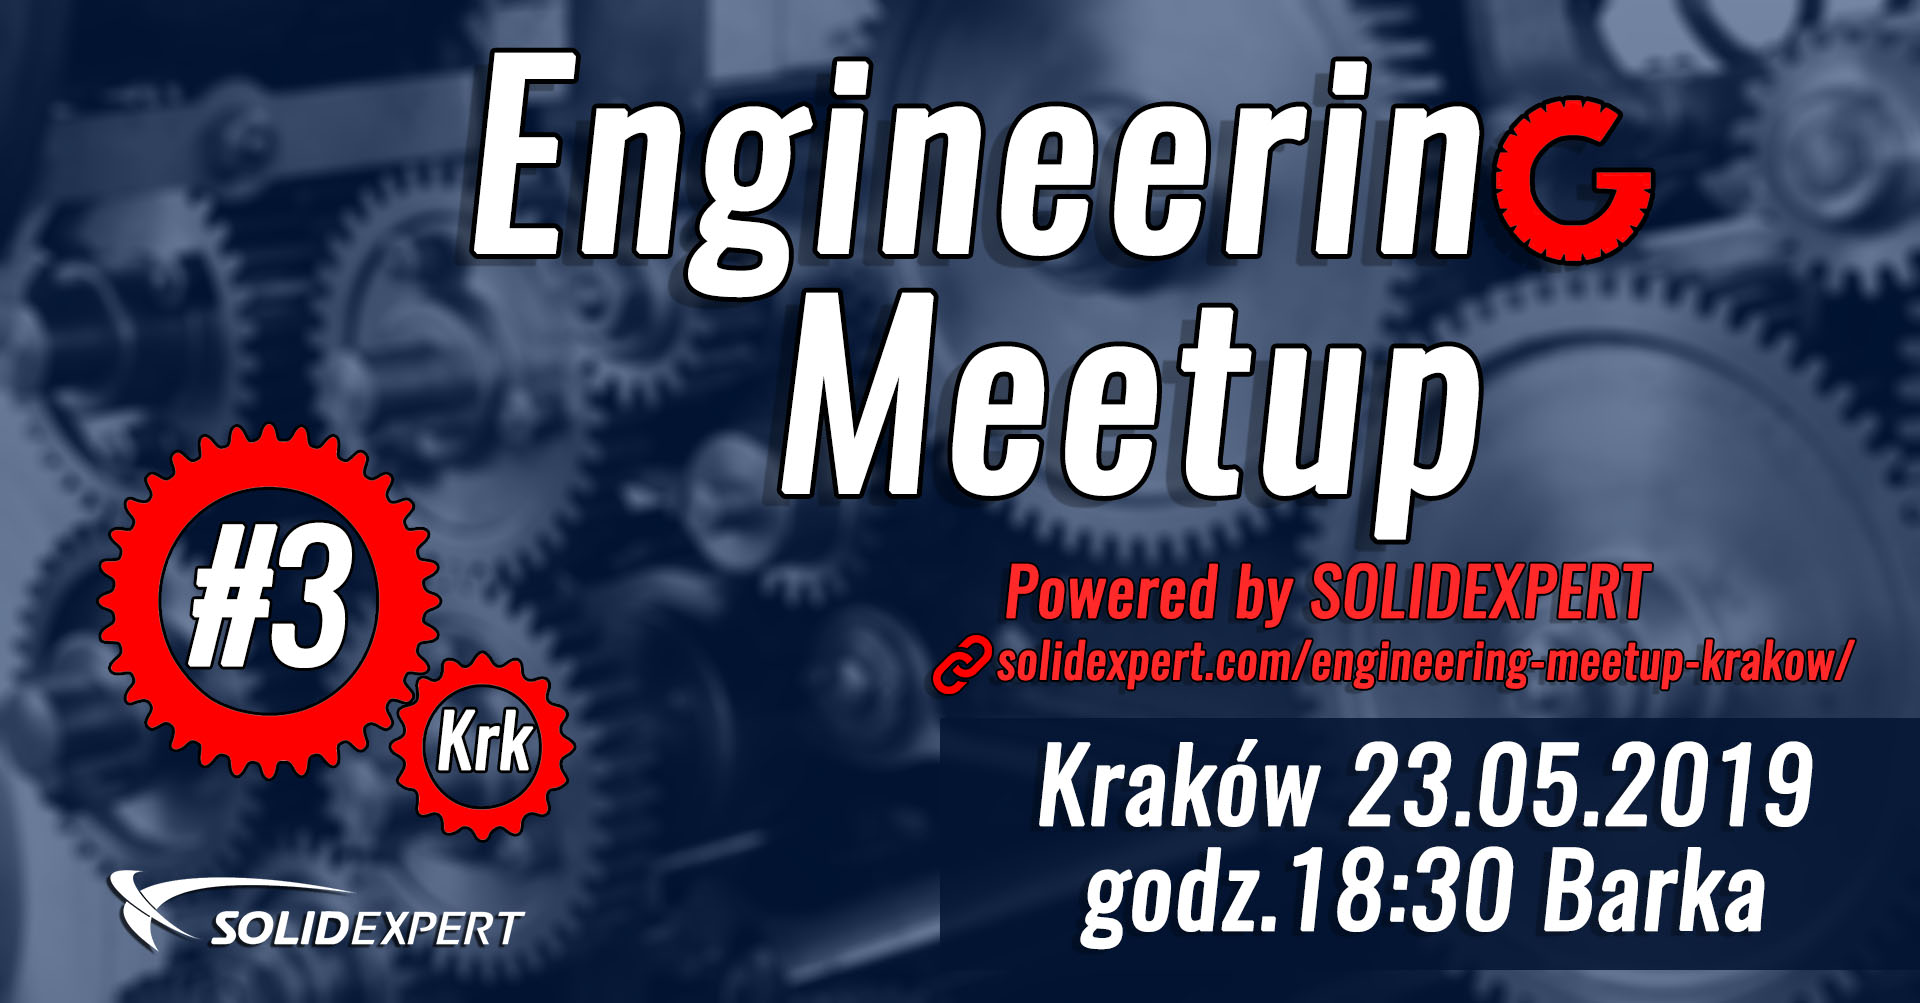 engineering-meetup-3-krk-maj-2019